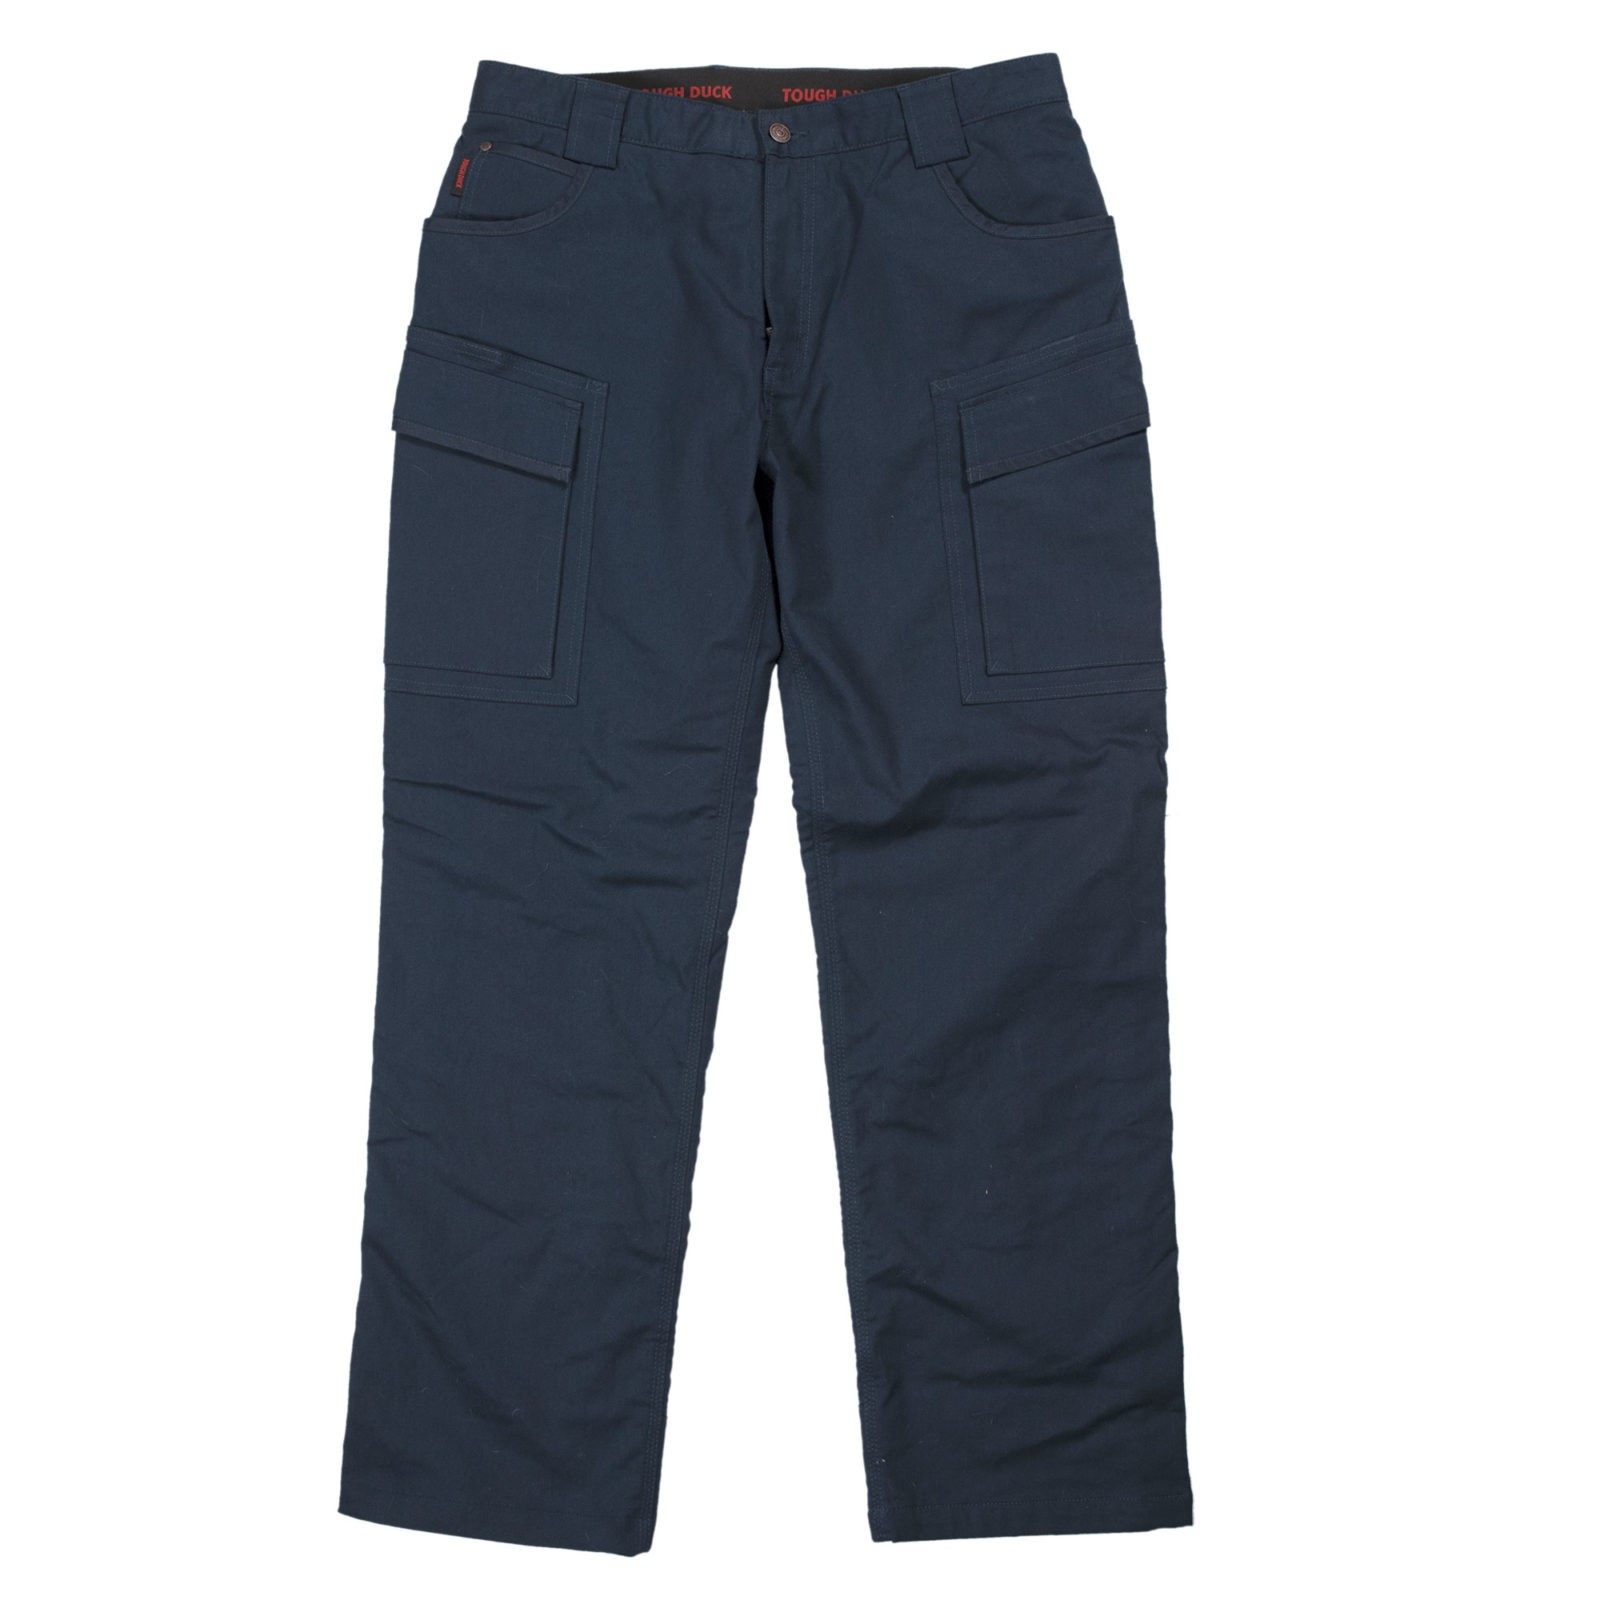 48 Wholesale Laides Fleece Lined Pants -Plain 2 Pockets